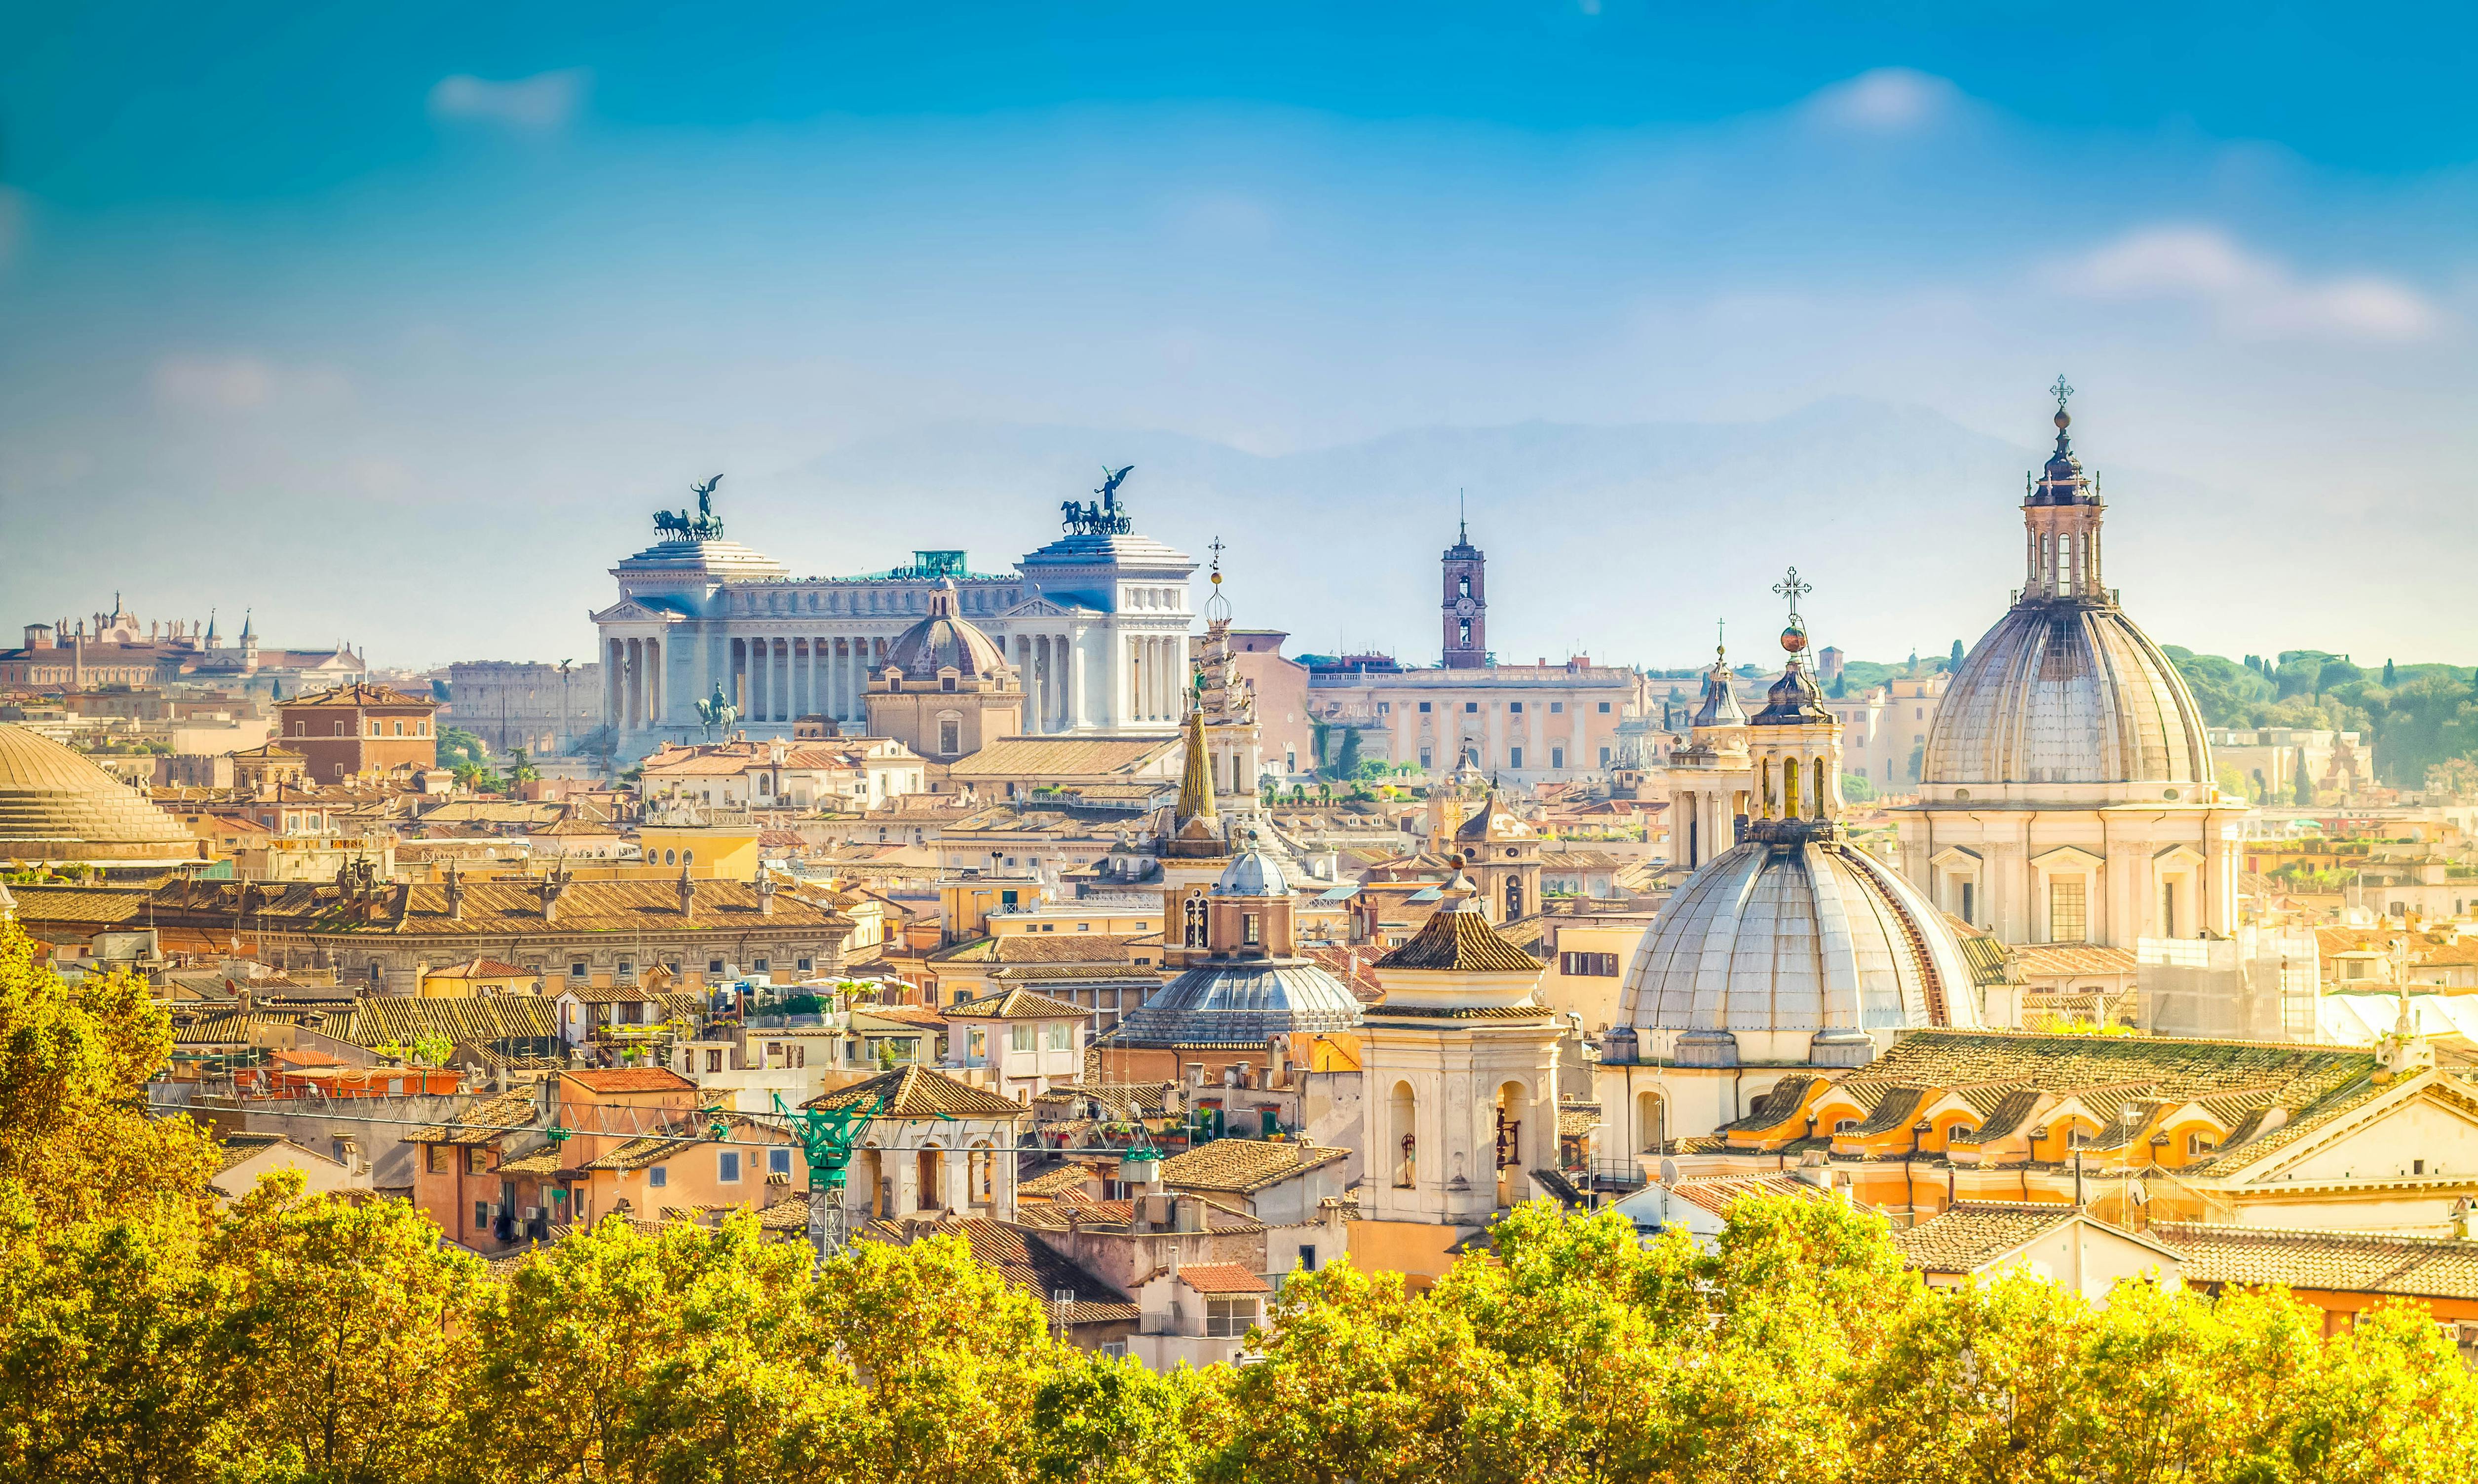 Escape Tour défi de ville interactif et autoguidé à Rome